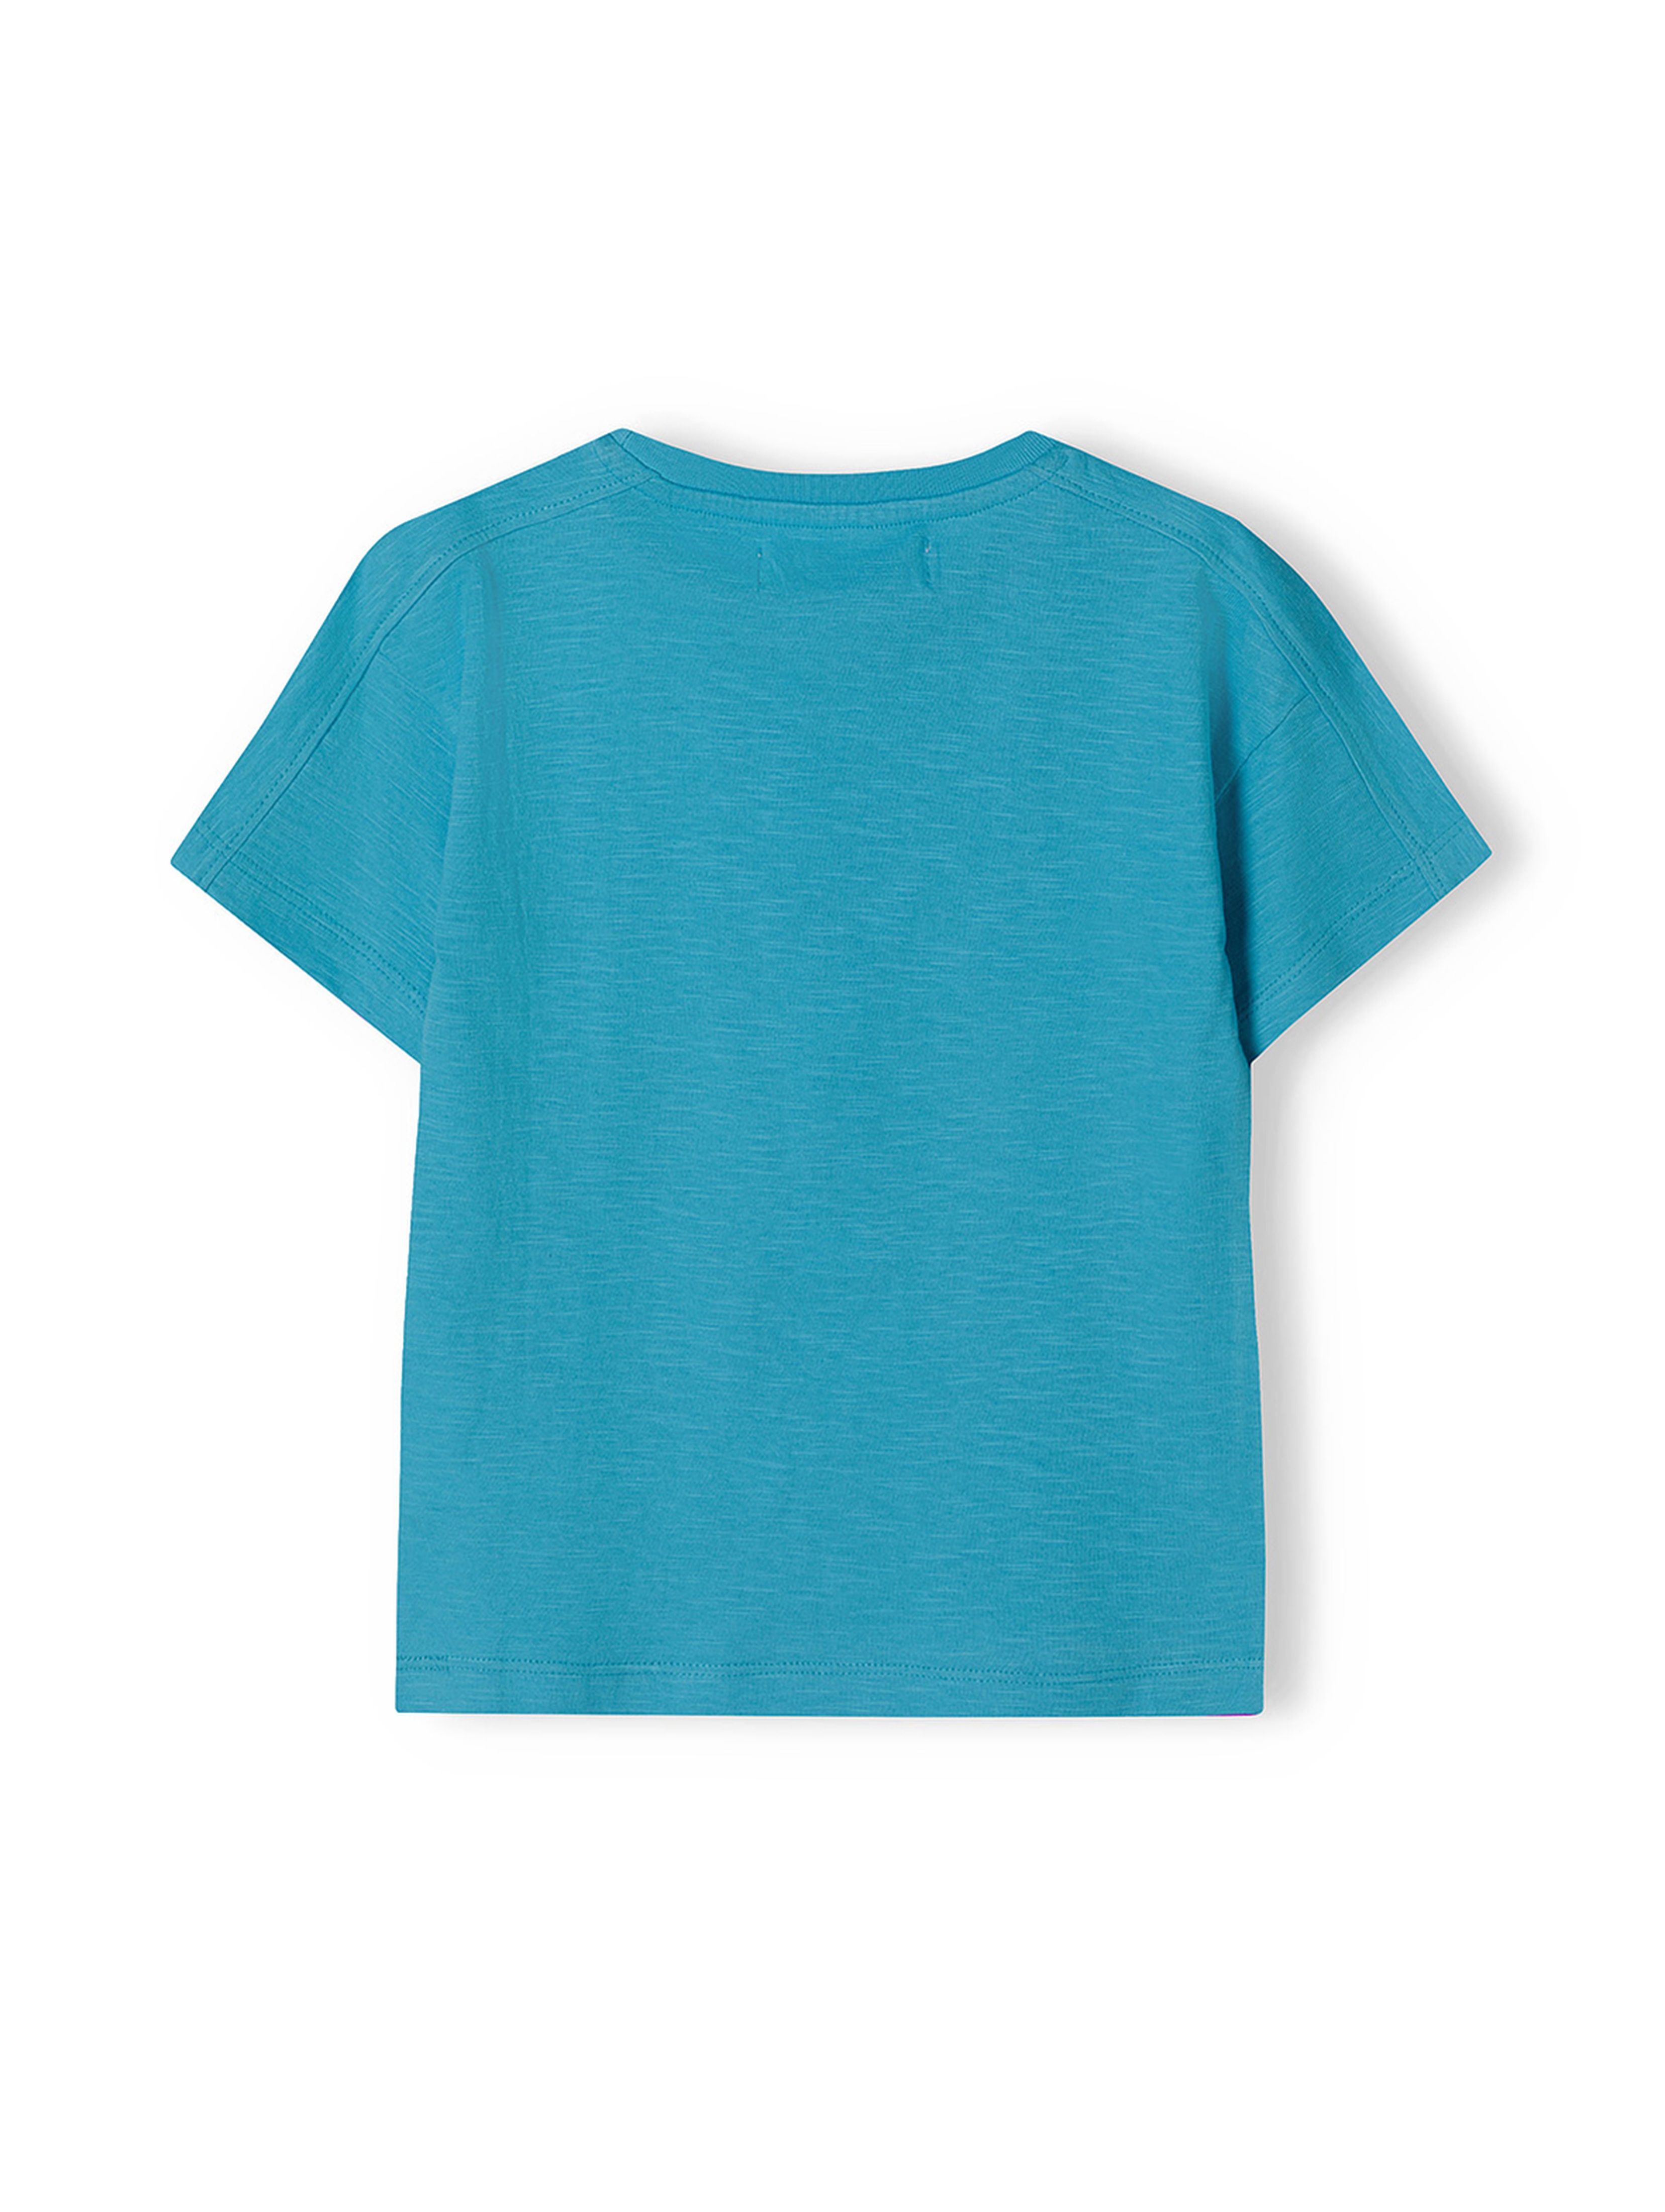 Niebieski t-shirt bawełniany niemowlęcy z nadrukiem